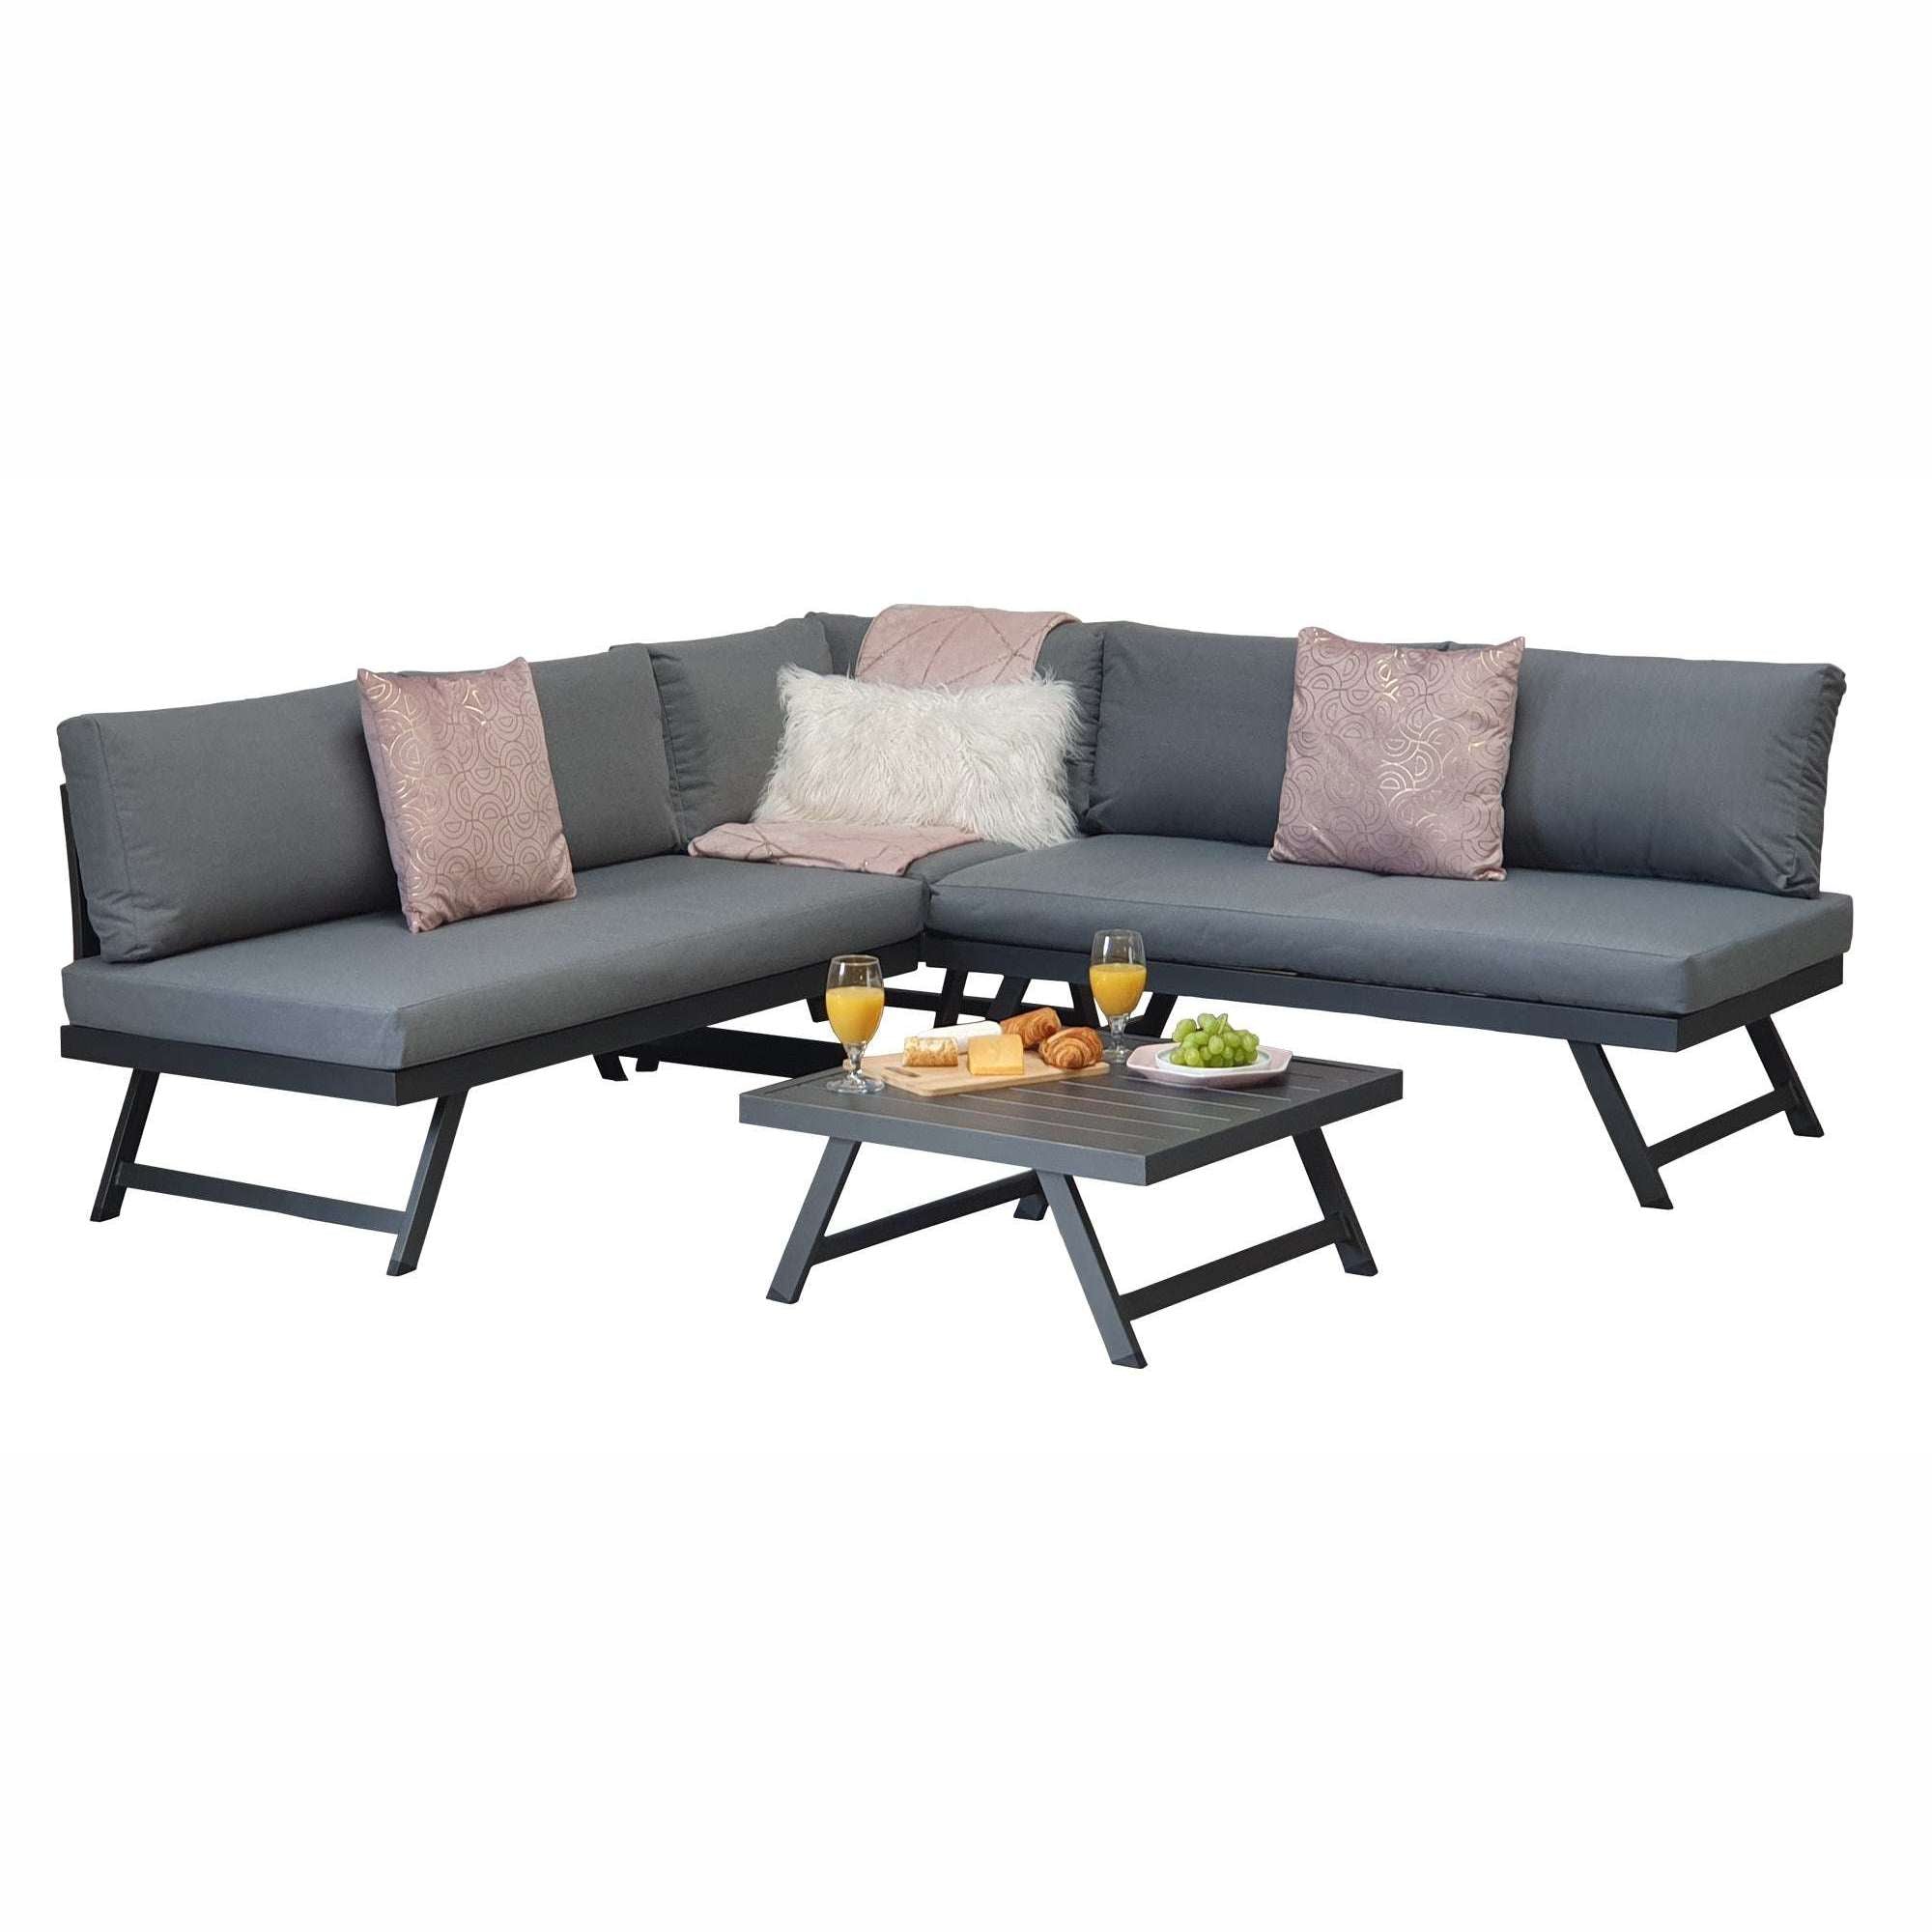 Exceptional Garden:Signature Weave Dark Grey Kimmie Corner Sofa Set with Adjustable Headrest